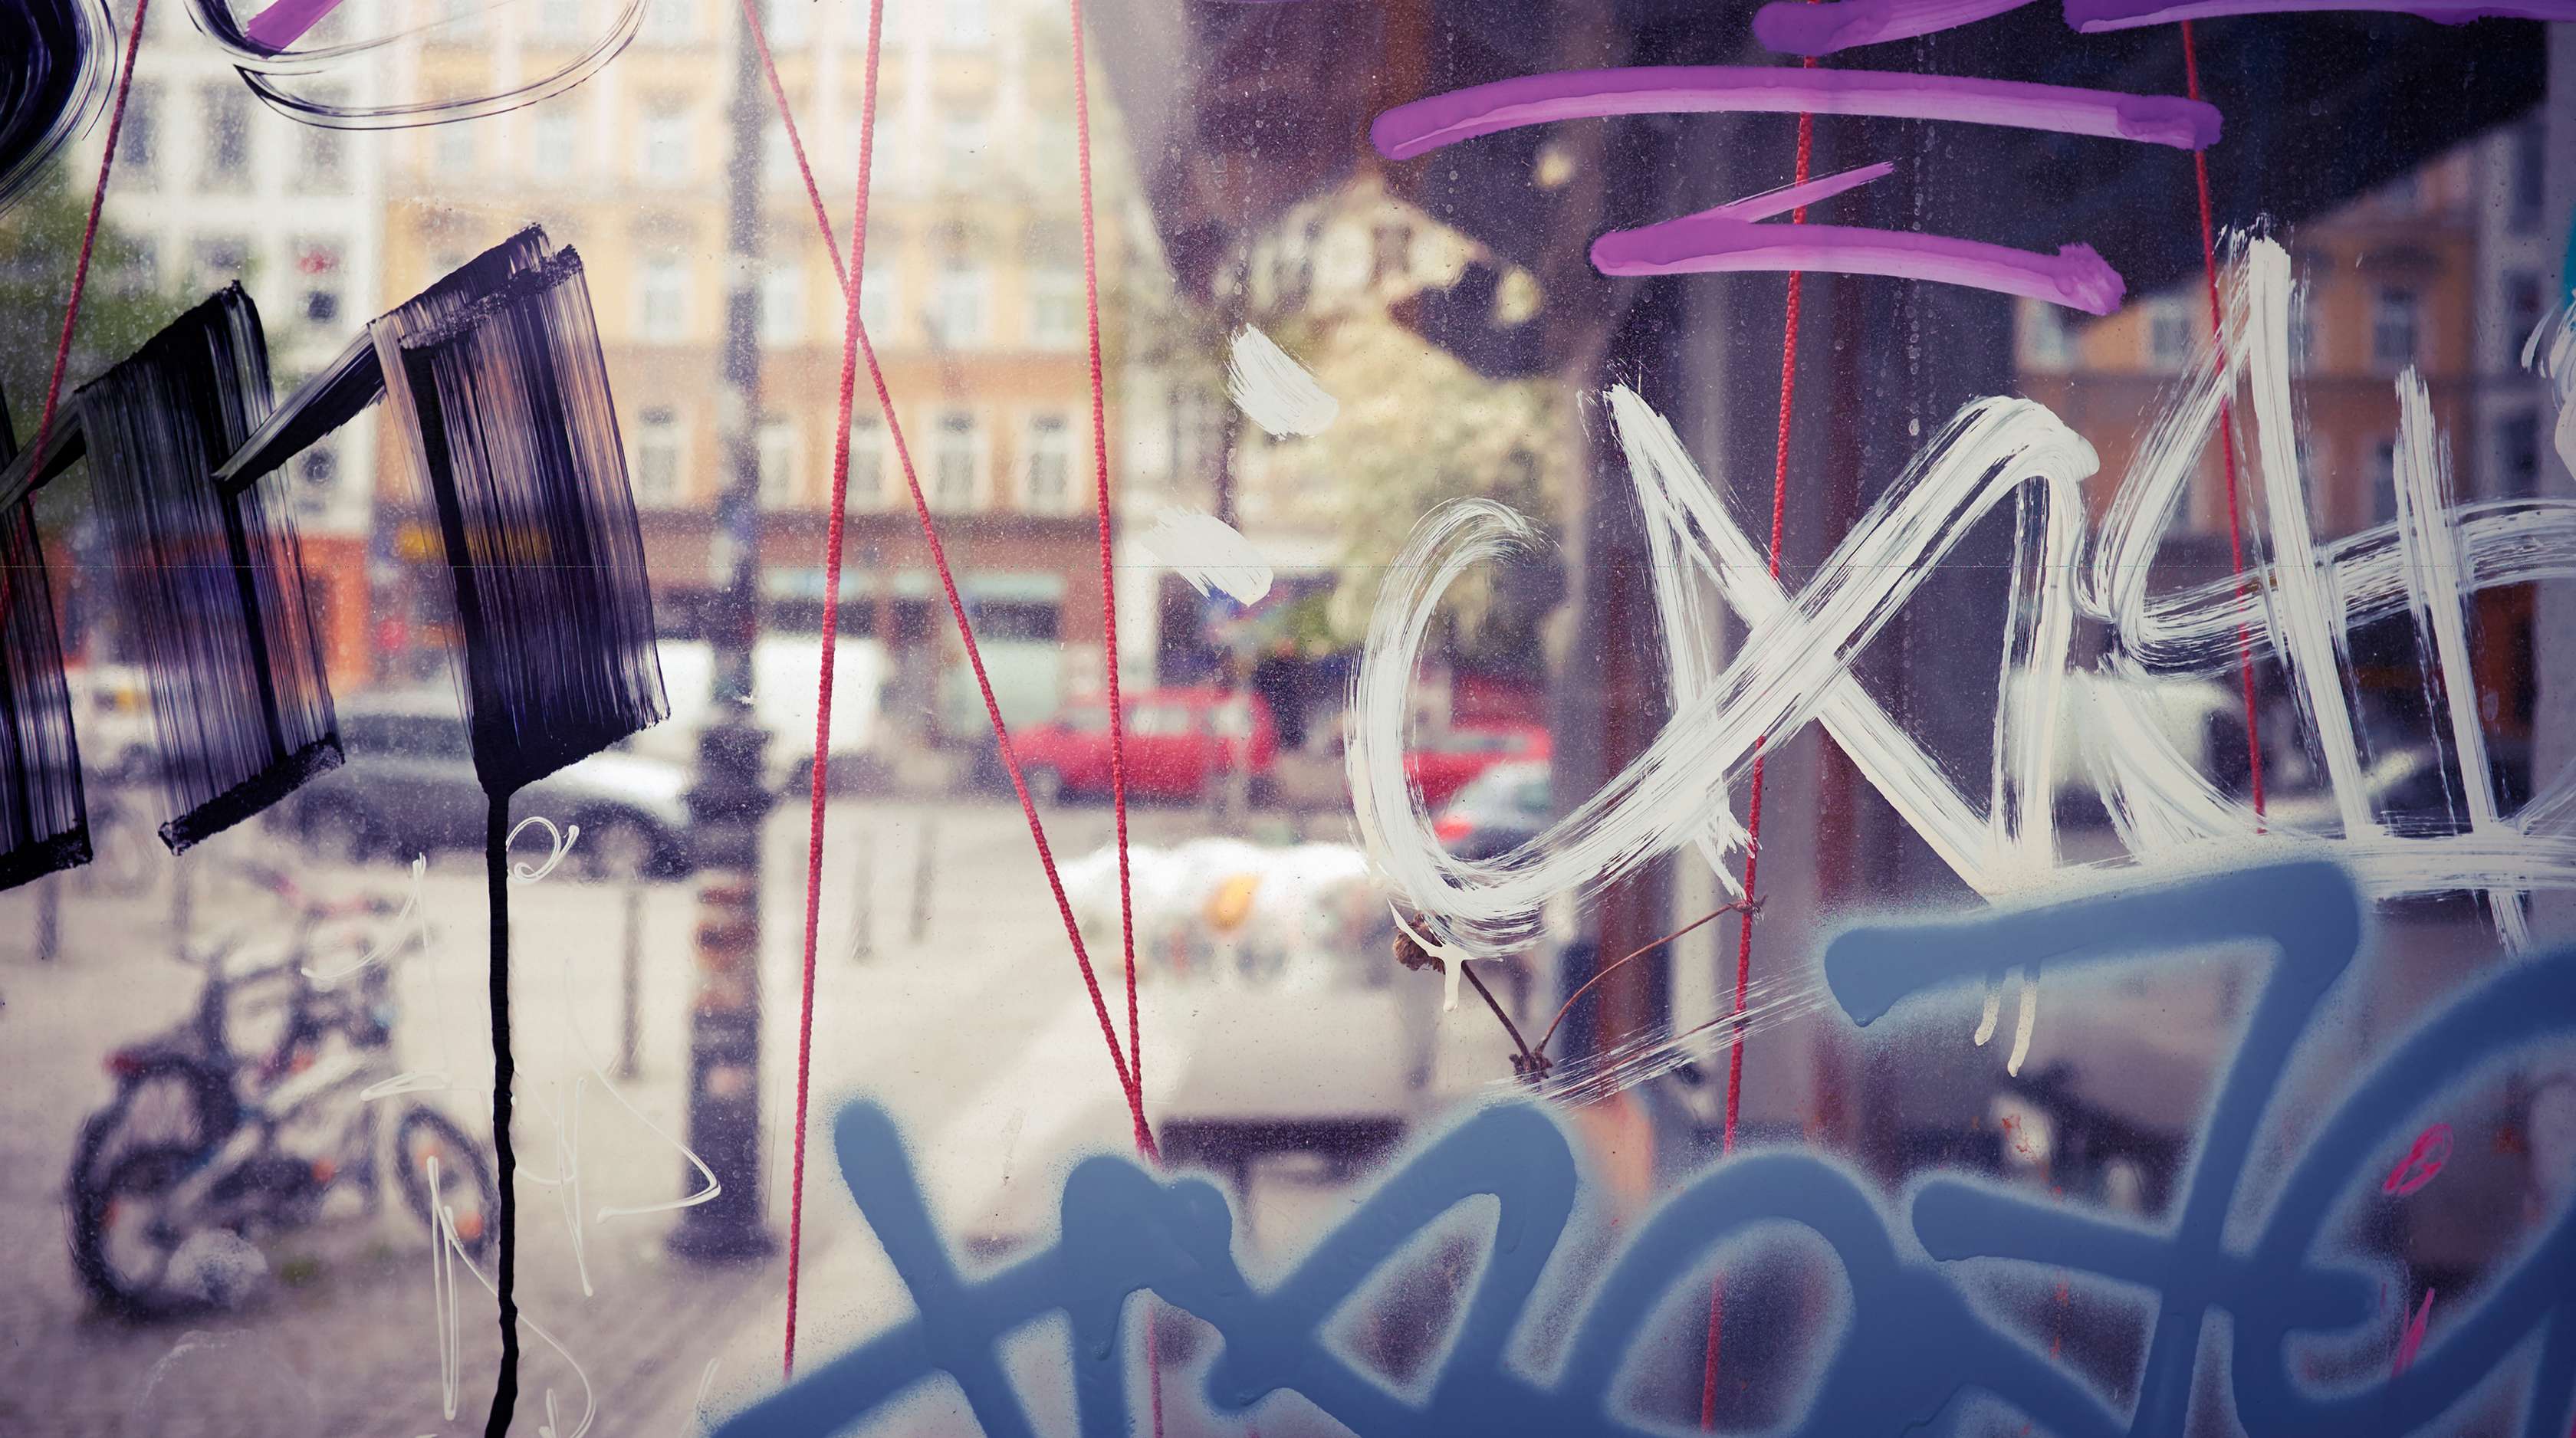 Allianz - Vandalismus Graffiti: Farbschmierereien auf Fensterscheibe